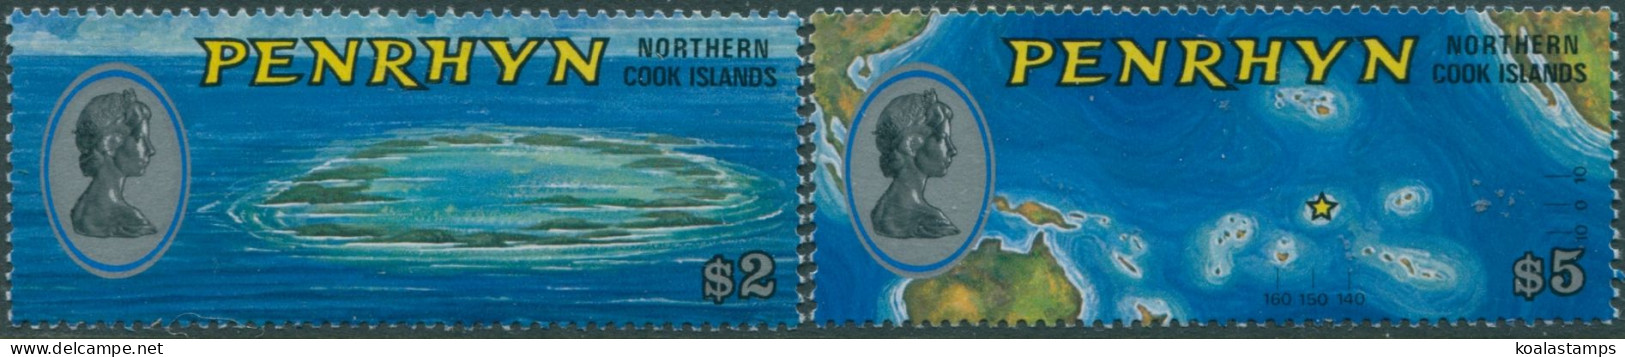 Cook Islands Penrhyn 1974 SG68-69 Island Maps Set MNH - Penrhyn